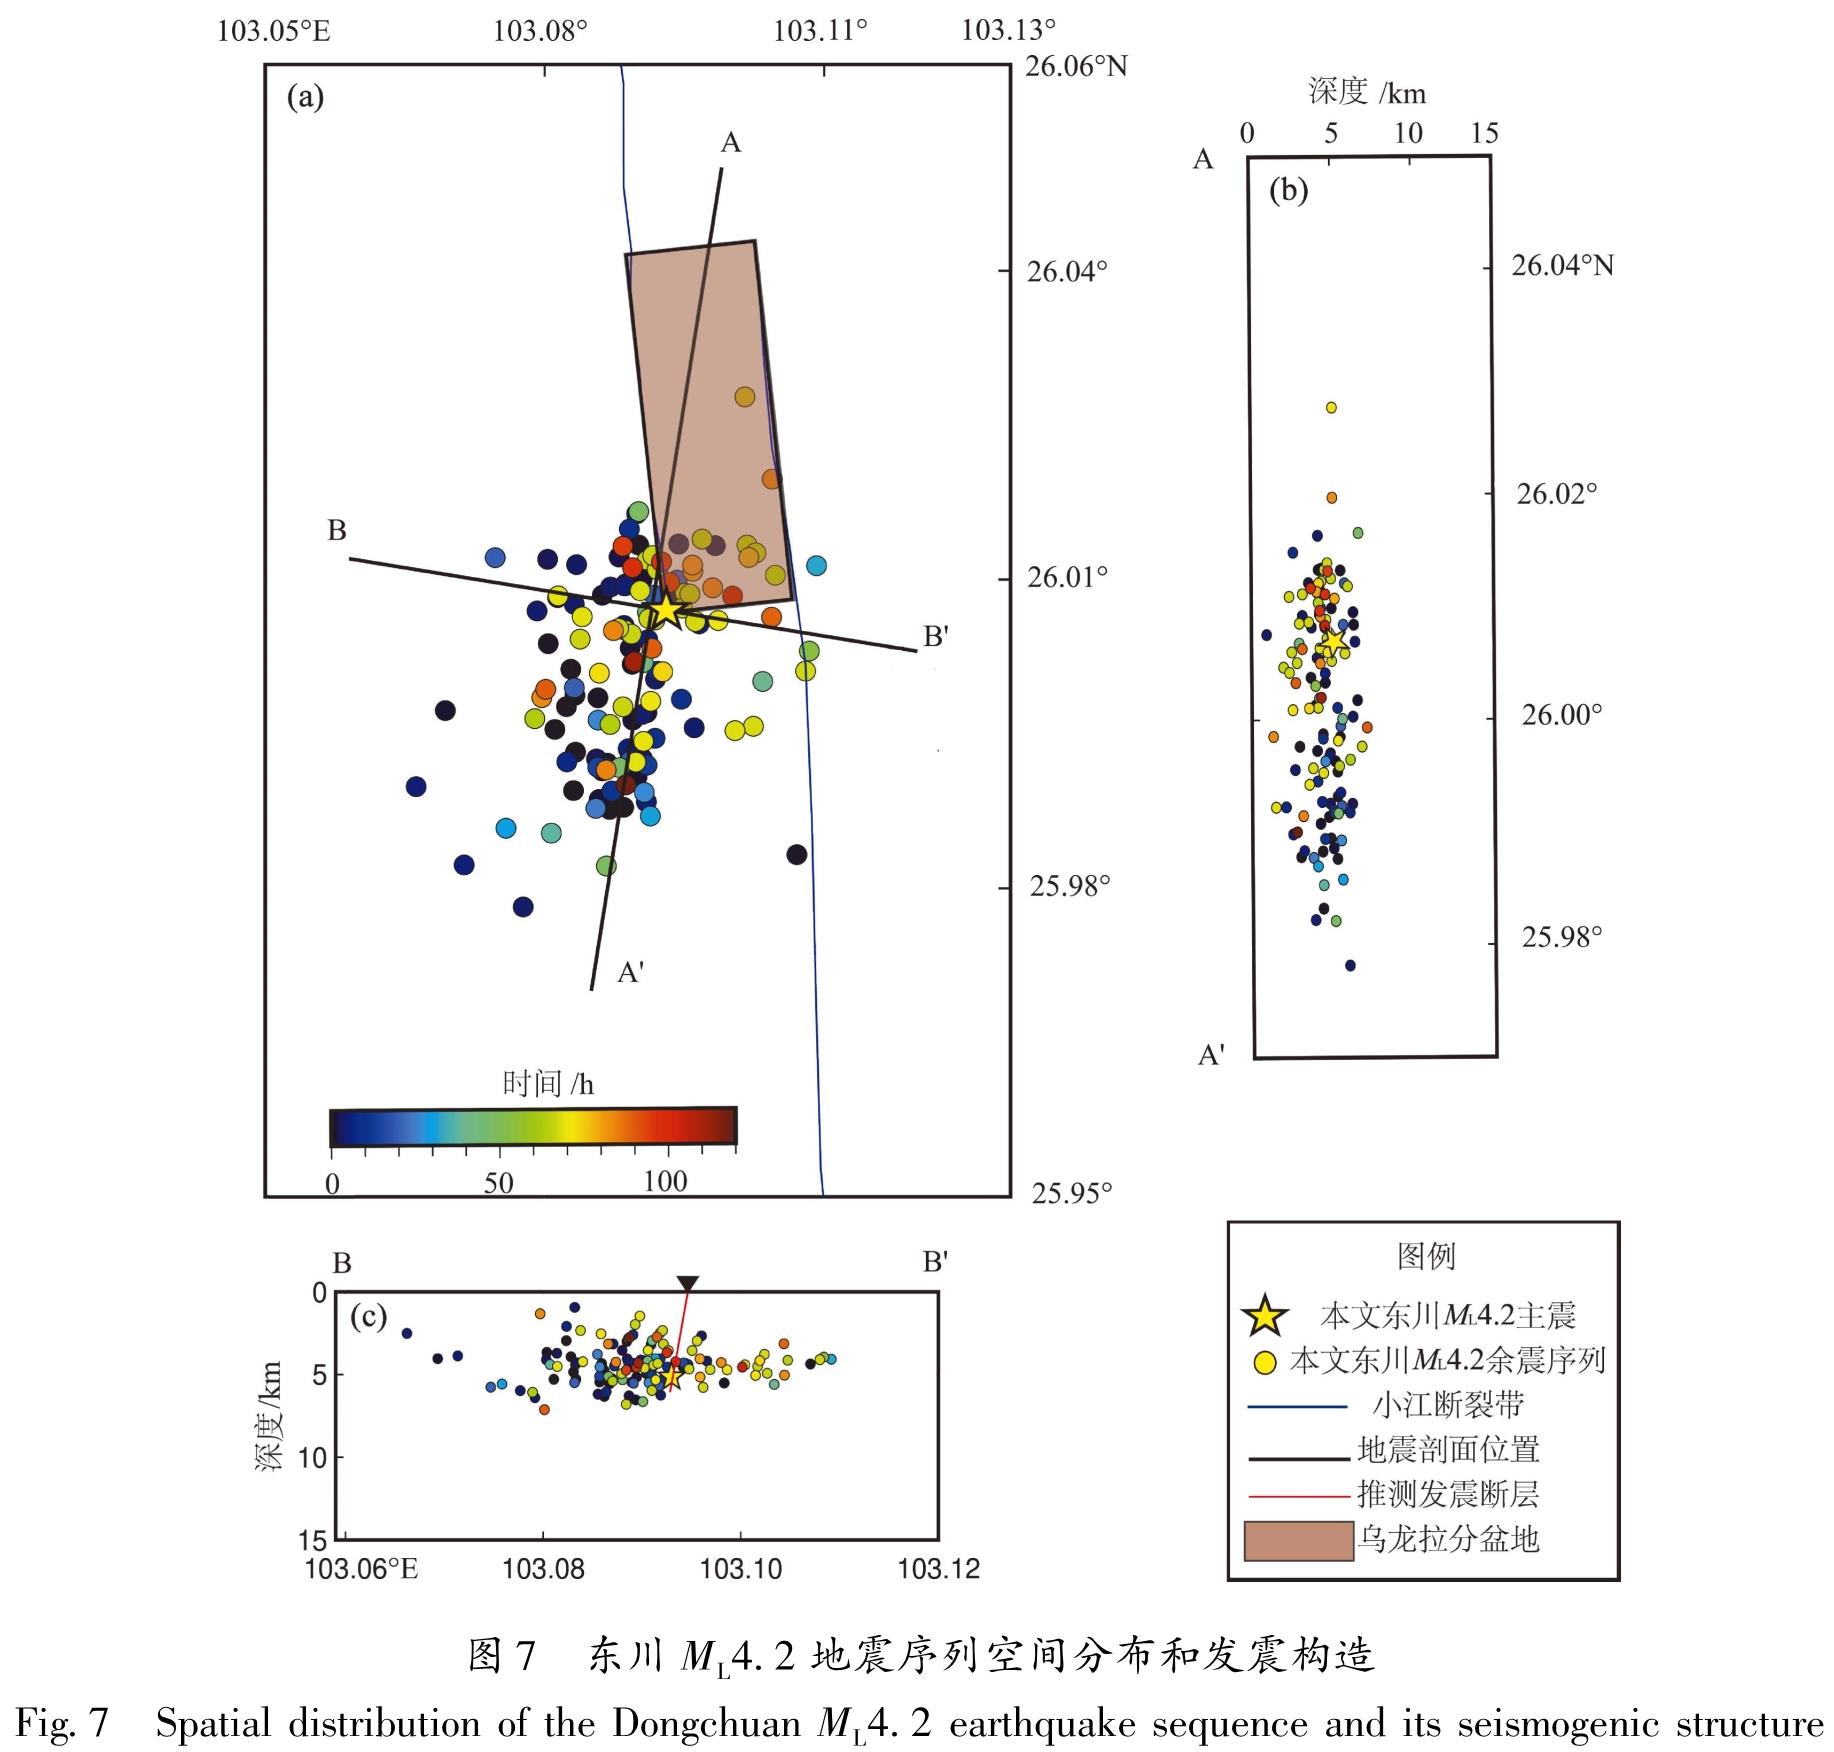 图7 东川ML4.2地震序列空间分布和发震构造<br/>Fig.7 Spatial distribution of the Dongchuan ML4.2 earthquake sequence and its seismogenic structure